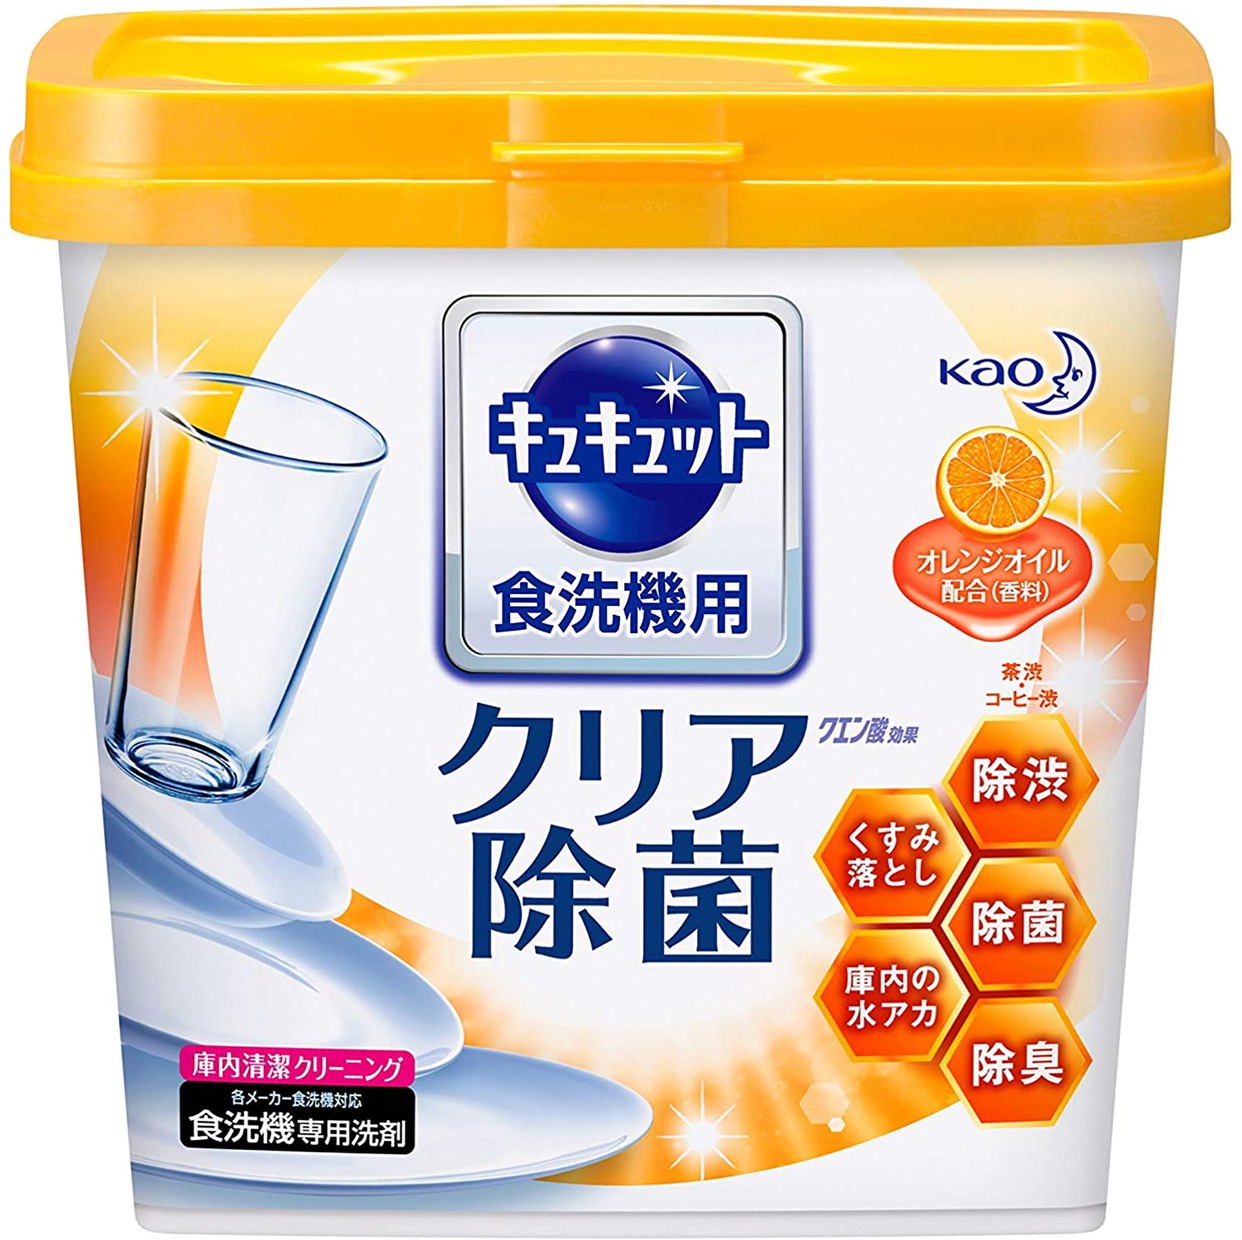 花王(kao) 食器洗い乾燥機専用キュキュット クエン酸効果 オレンジオイル配合の商品画像1 